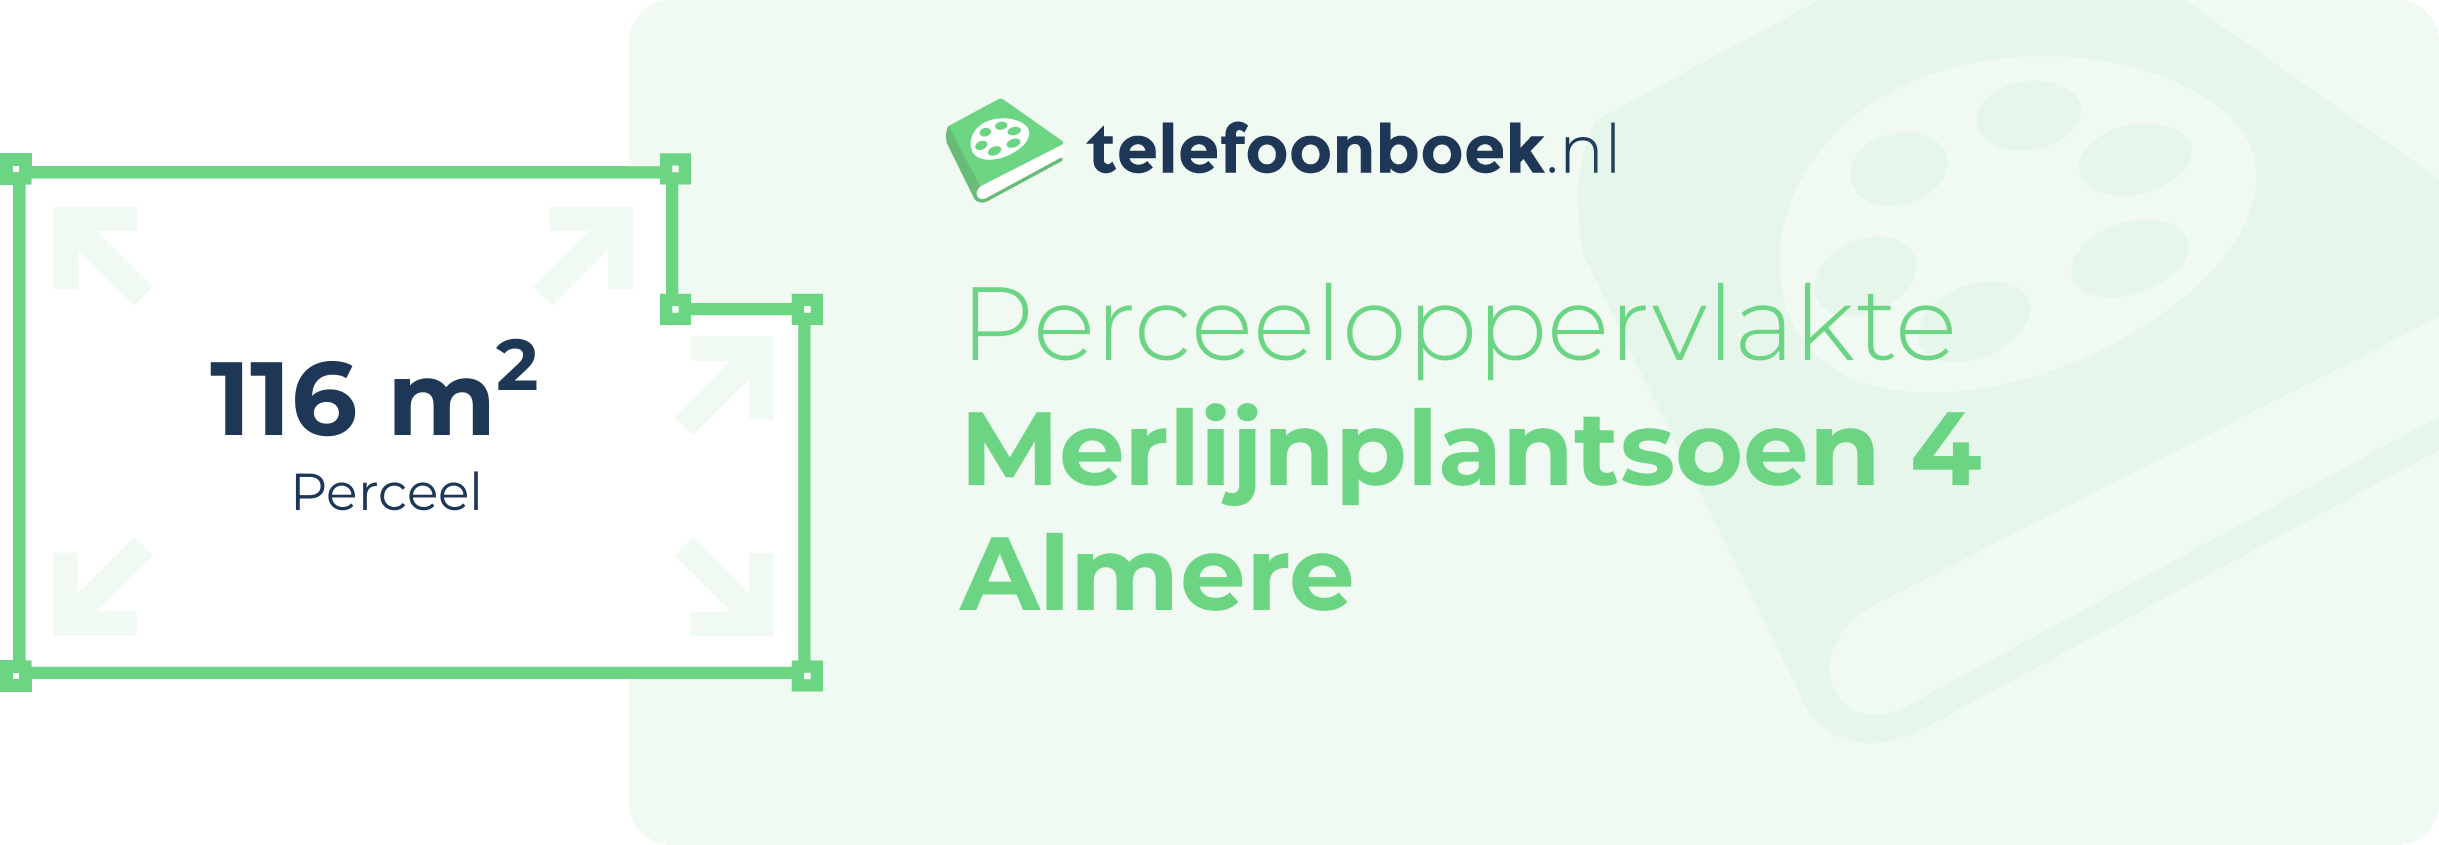 Perceeloppervlakte Merlijnplantsoen 4 Almere